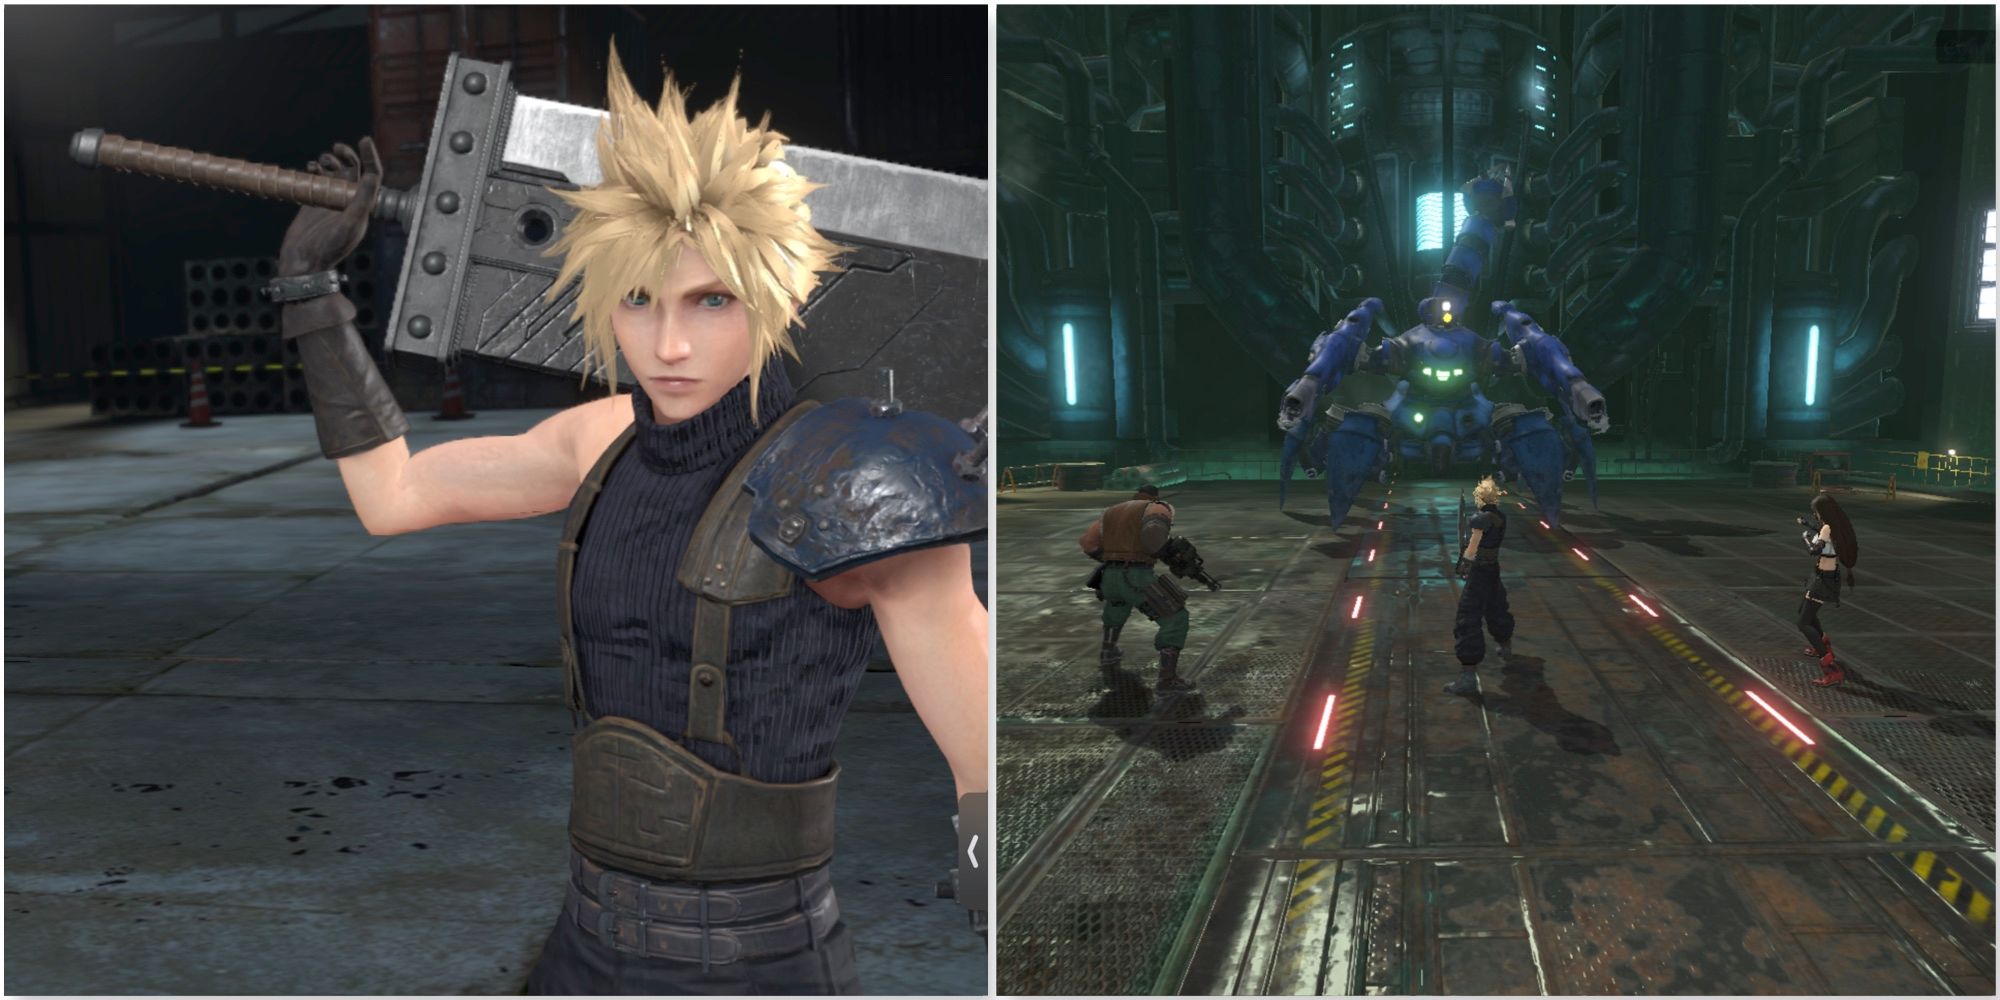 Cloud et combattre un boss dans Final Fantasy 7 Ever Crisis